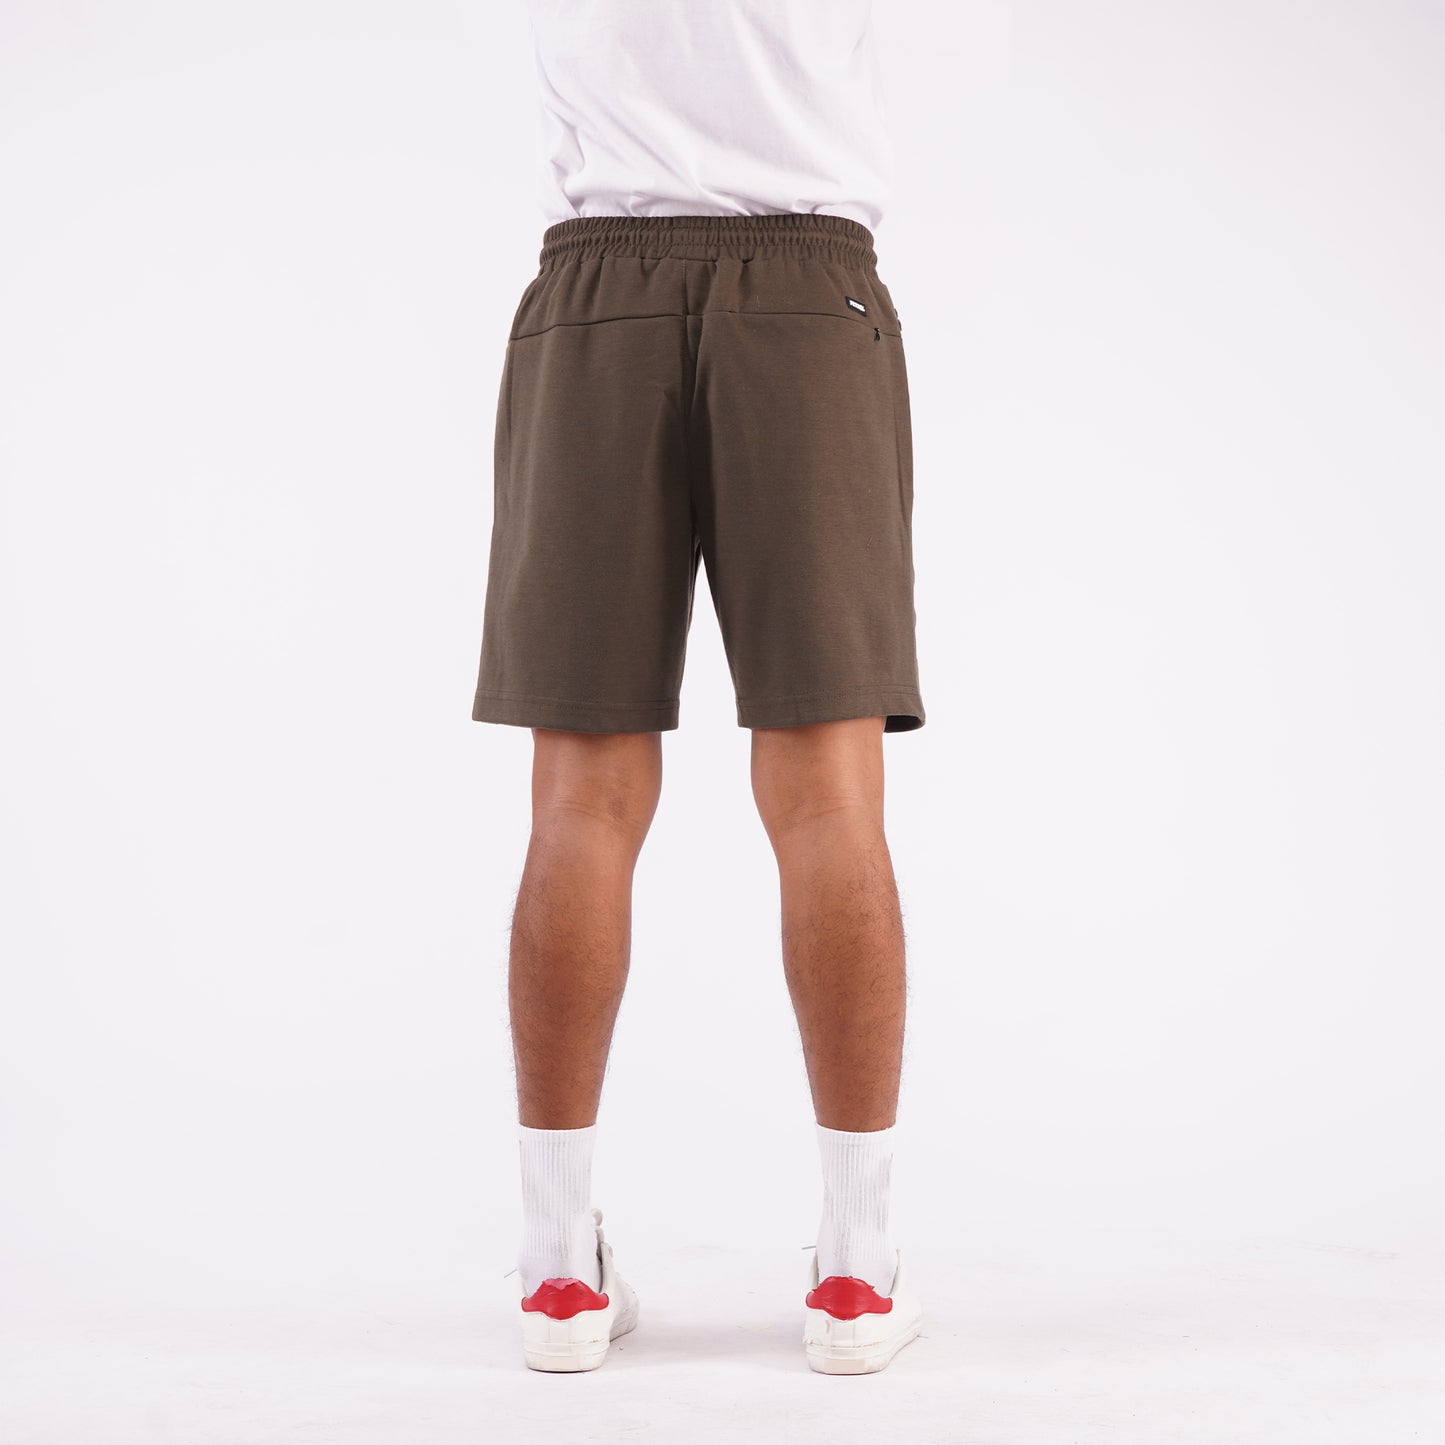 Petrol Basic Non-Denim Jogger Shorts for Men Regular Fitting Rinse Wash Fabric Casual short Dark Fatigue Jogger short for Men 117349 (Dark Fatigue)